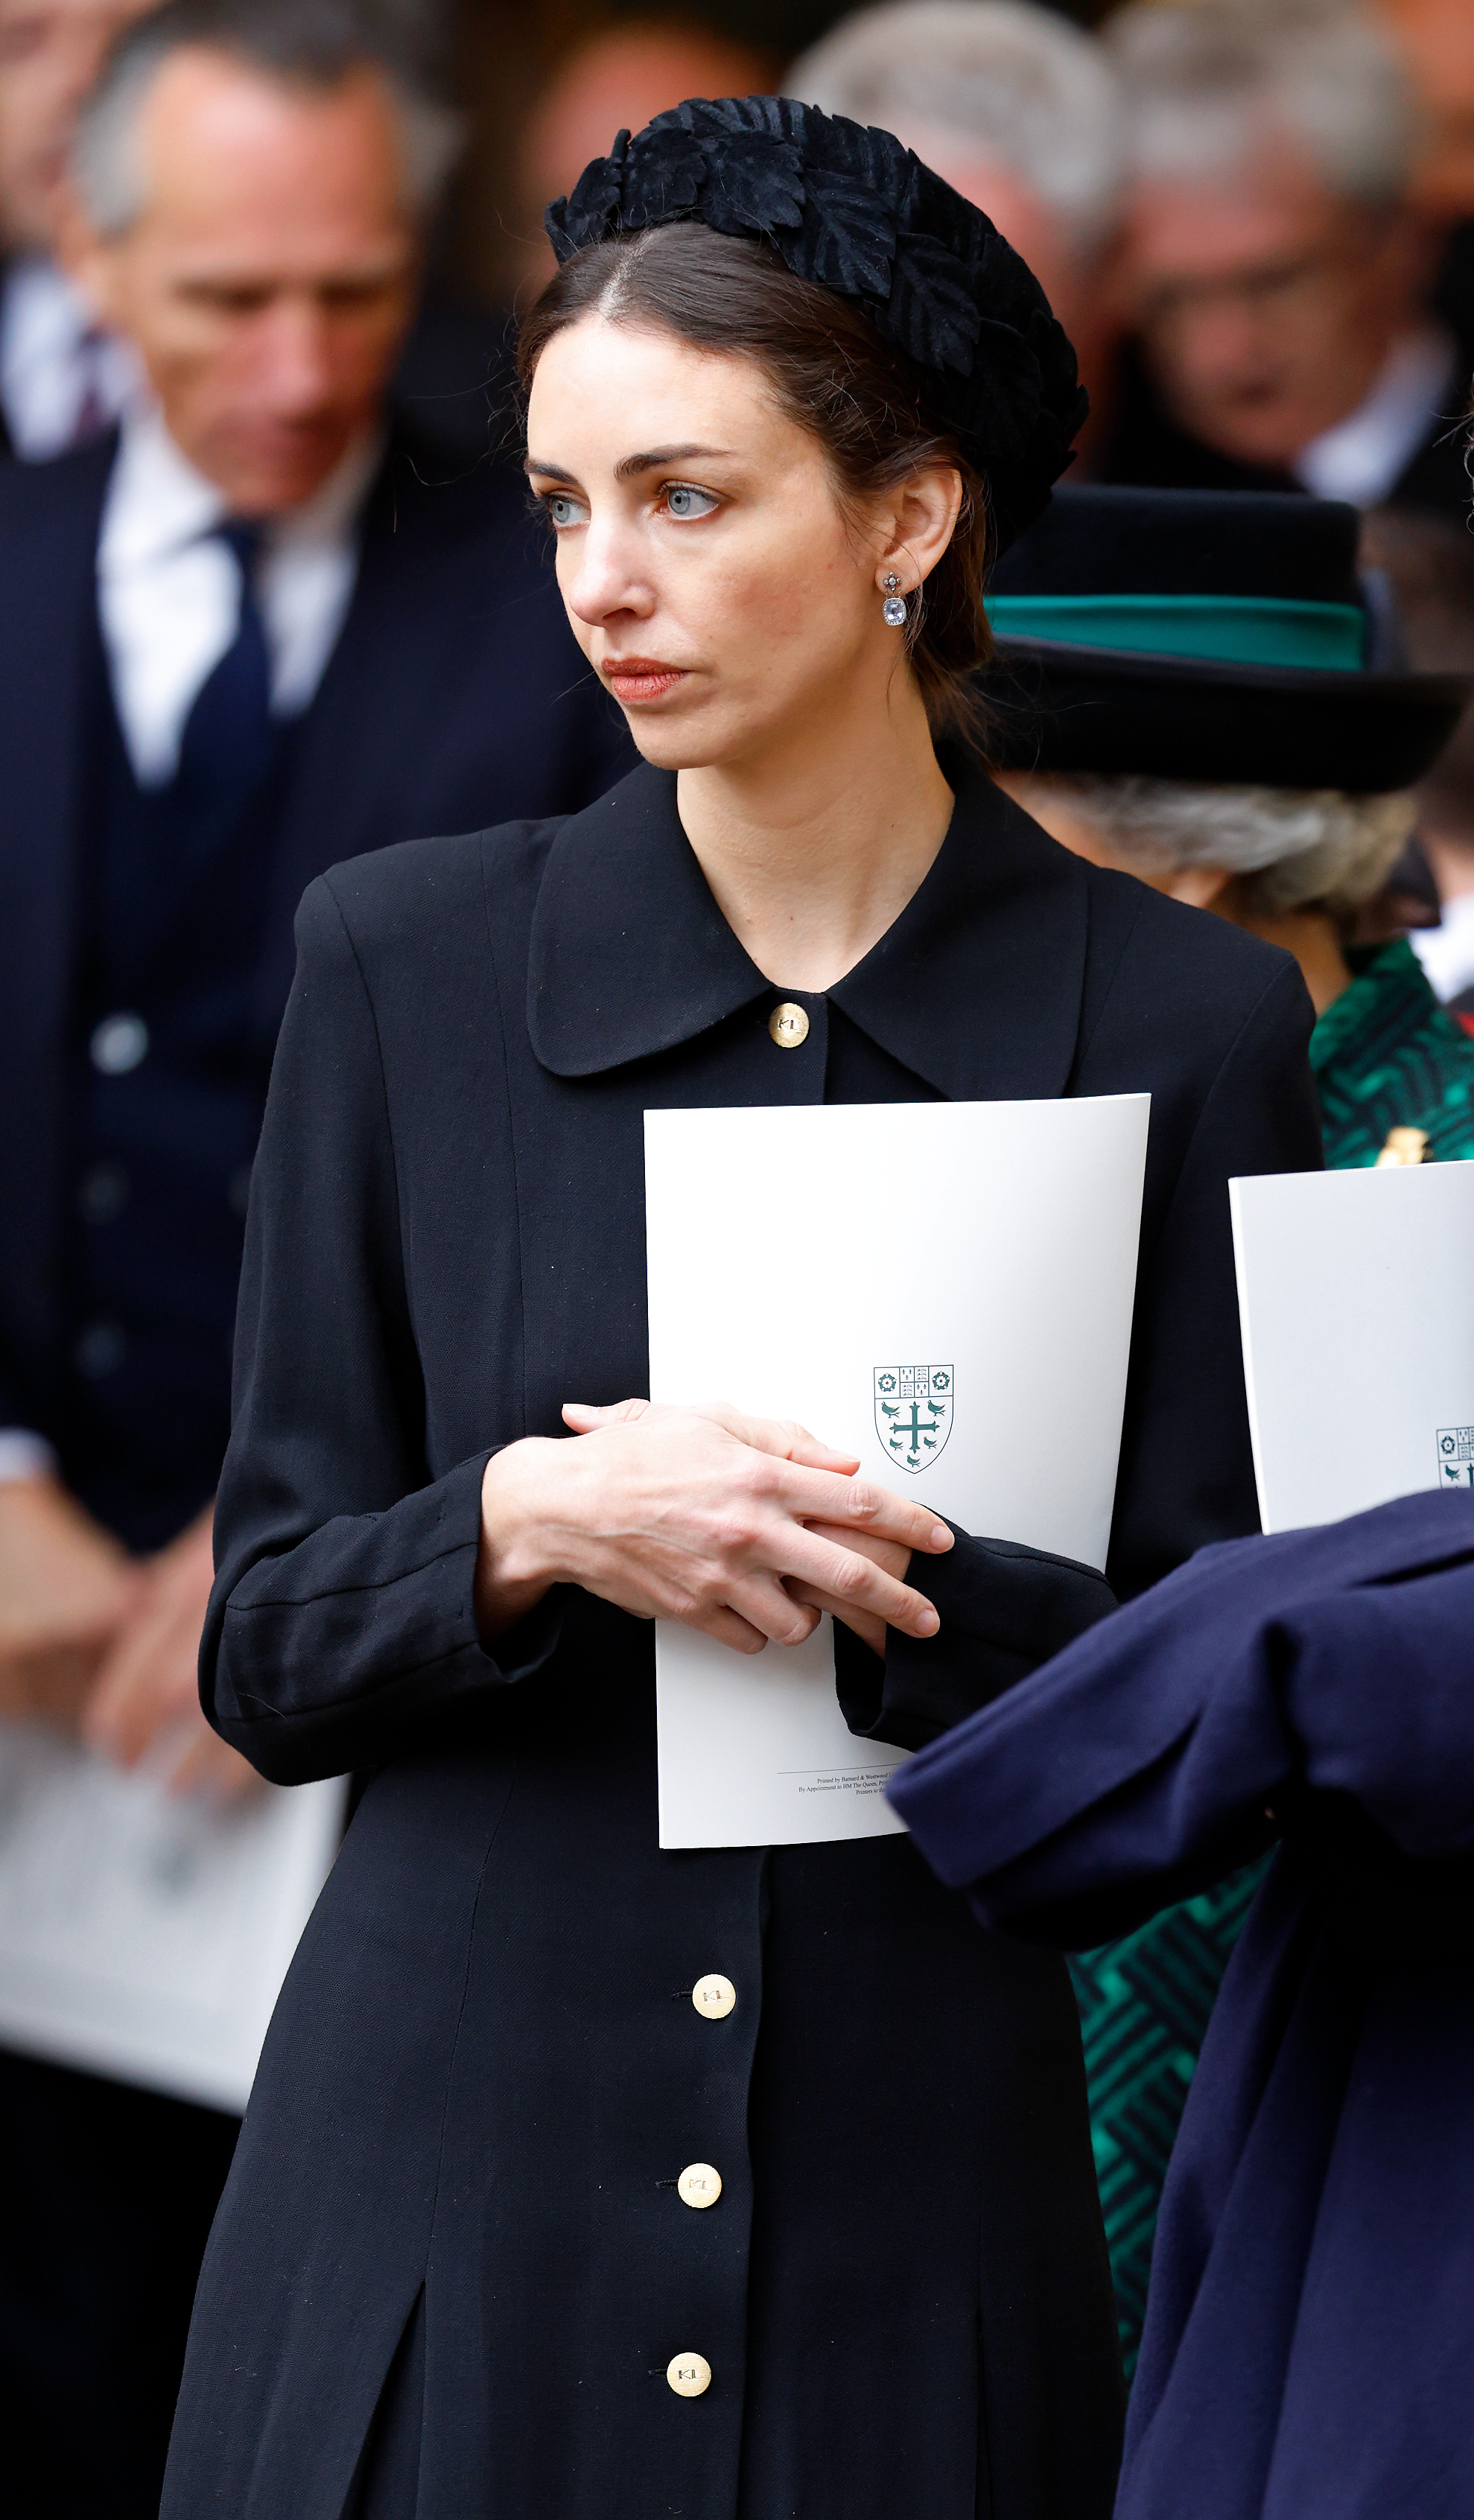 Rose Hanbury, Marchioness of Cholmondeley, nimmt am 29. März 2022 in der Westminster Abbey in London, England, an einem Dankgottesdienst für das Leben von Prinz Philip, Herzog von Edinburgh, teil: Getty Images